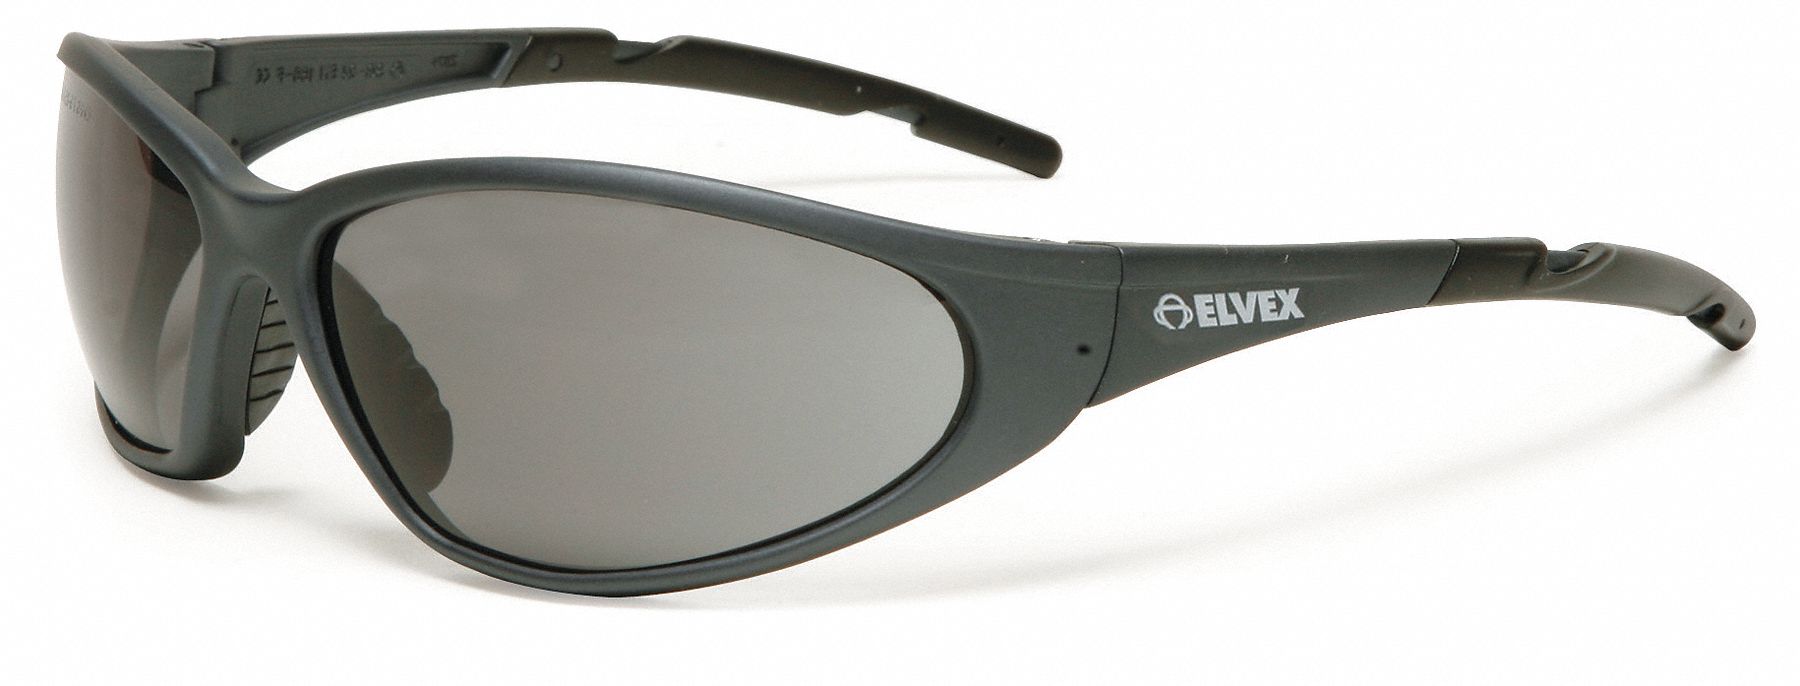 ELVEX, Wraparound Frame, Half-Frame, Safety Glasses - 9J511|SG-24G ...